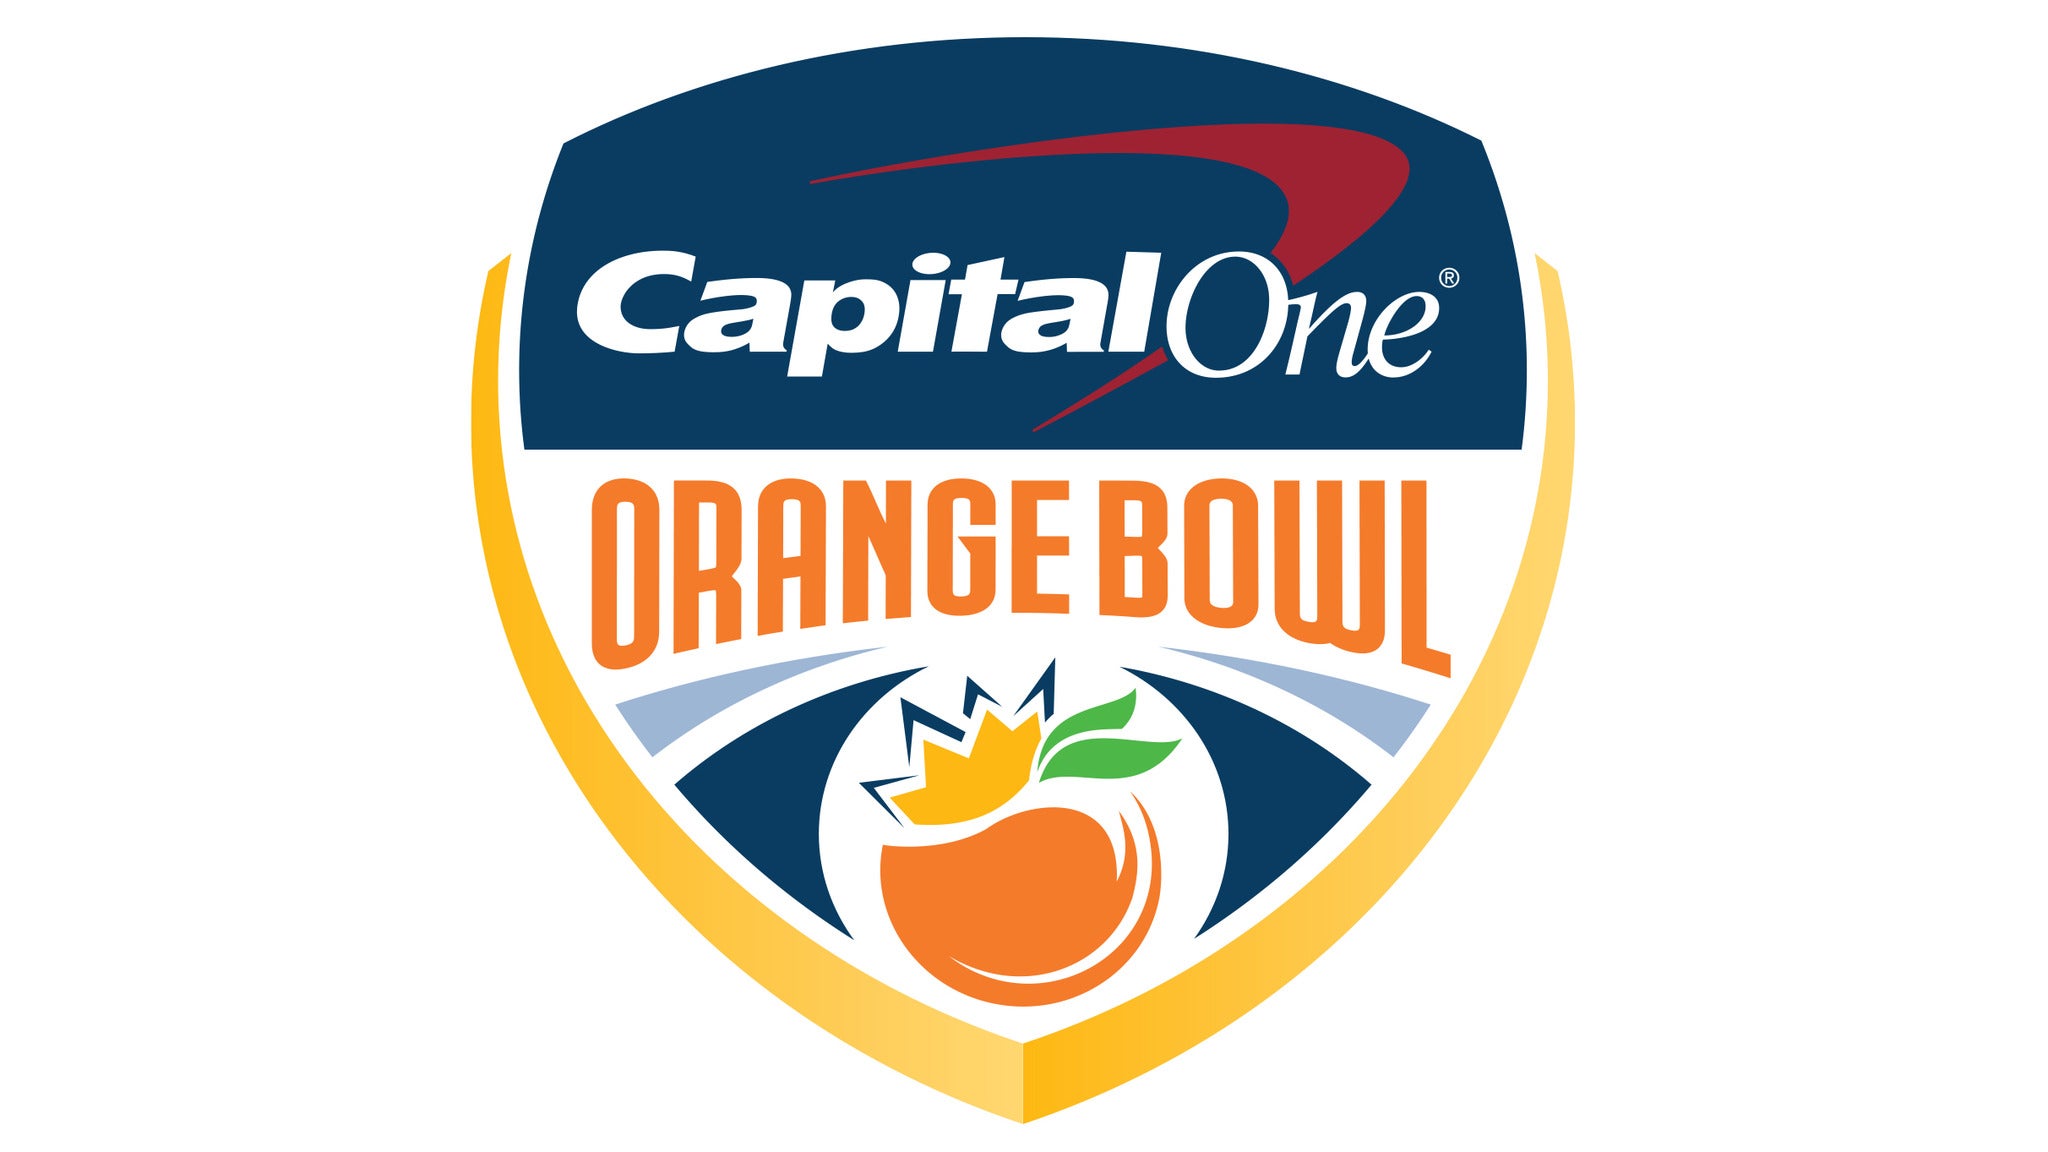 Capital One Orange Bowl Parking presale information on freepresalepasswords.com